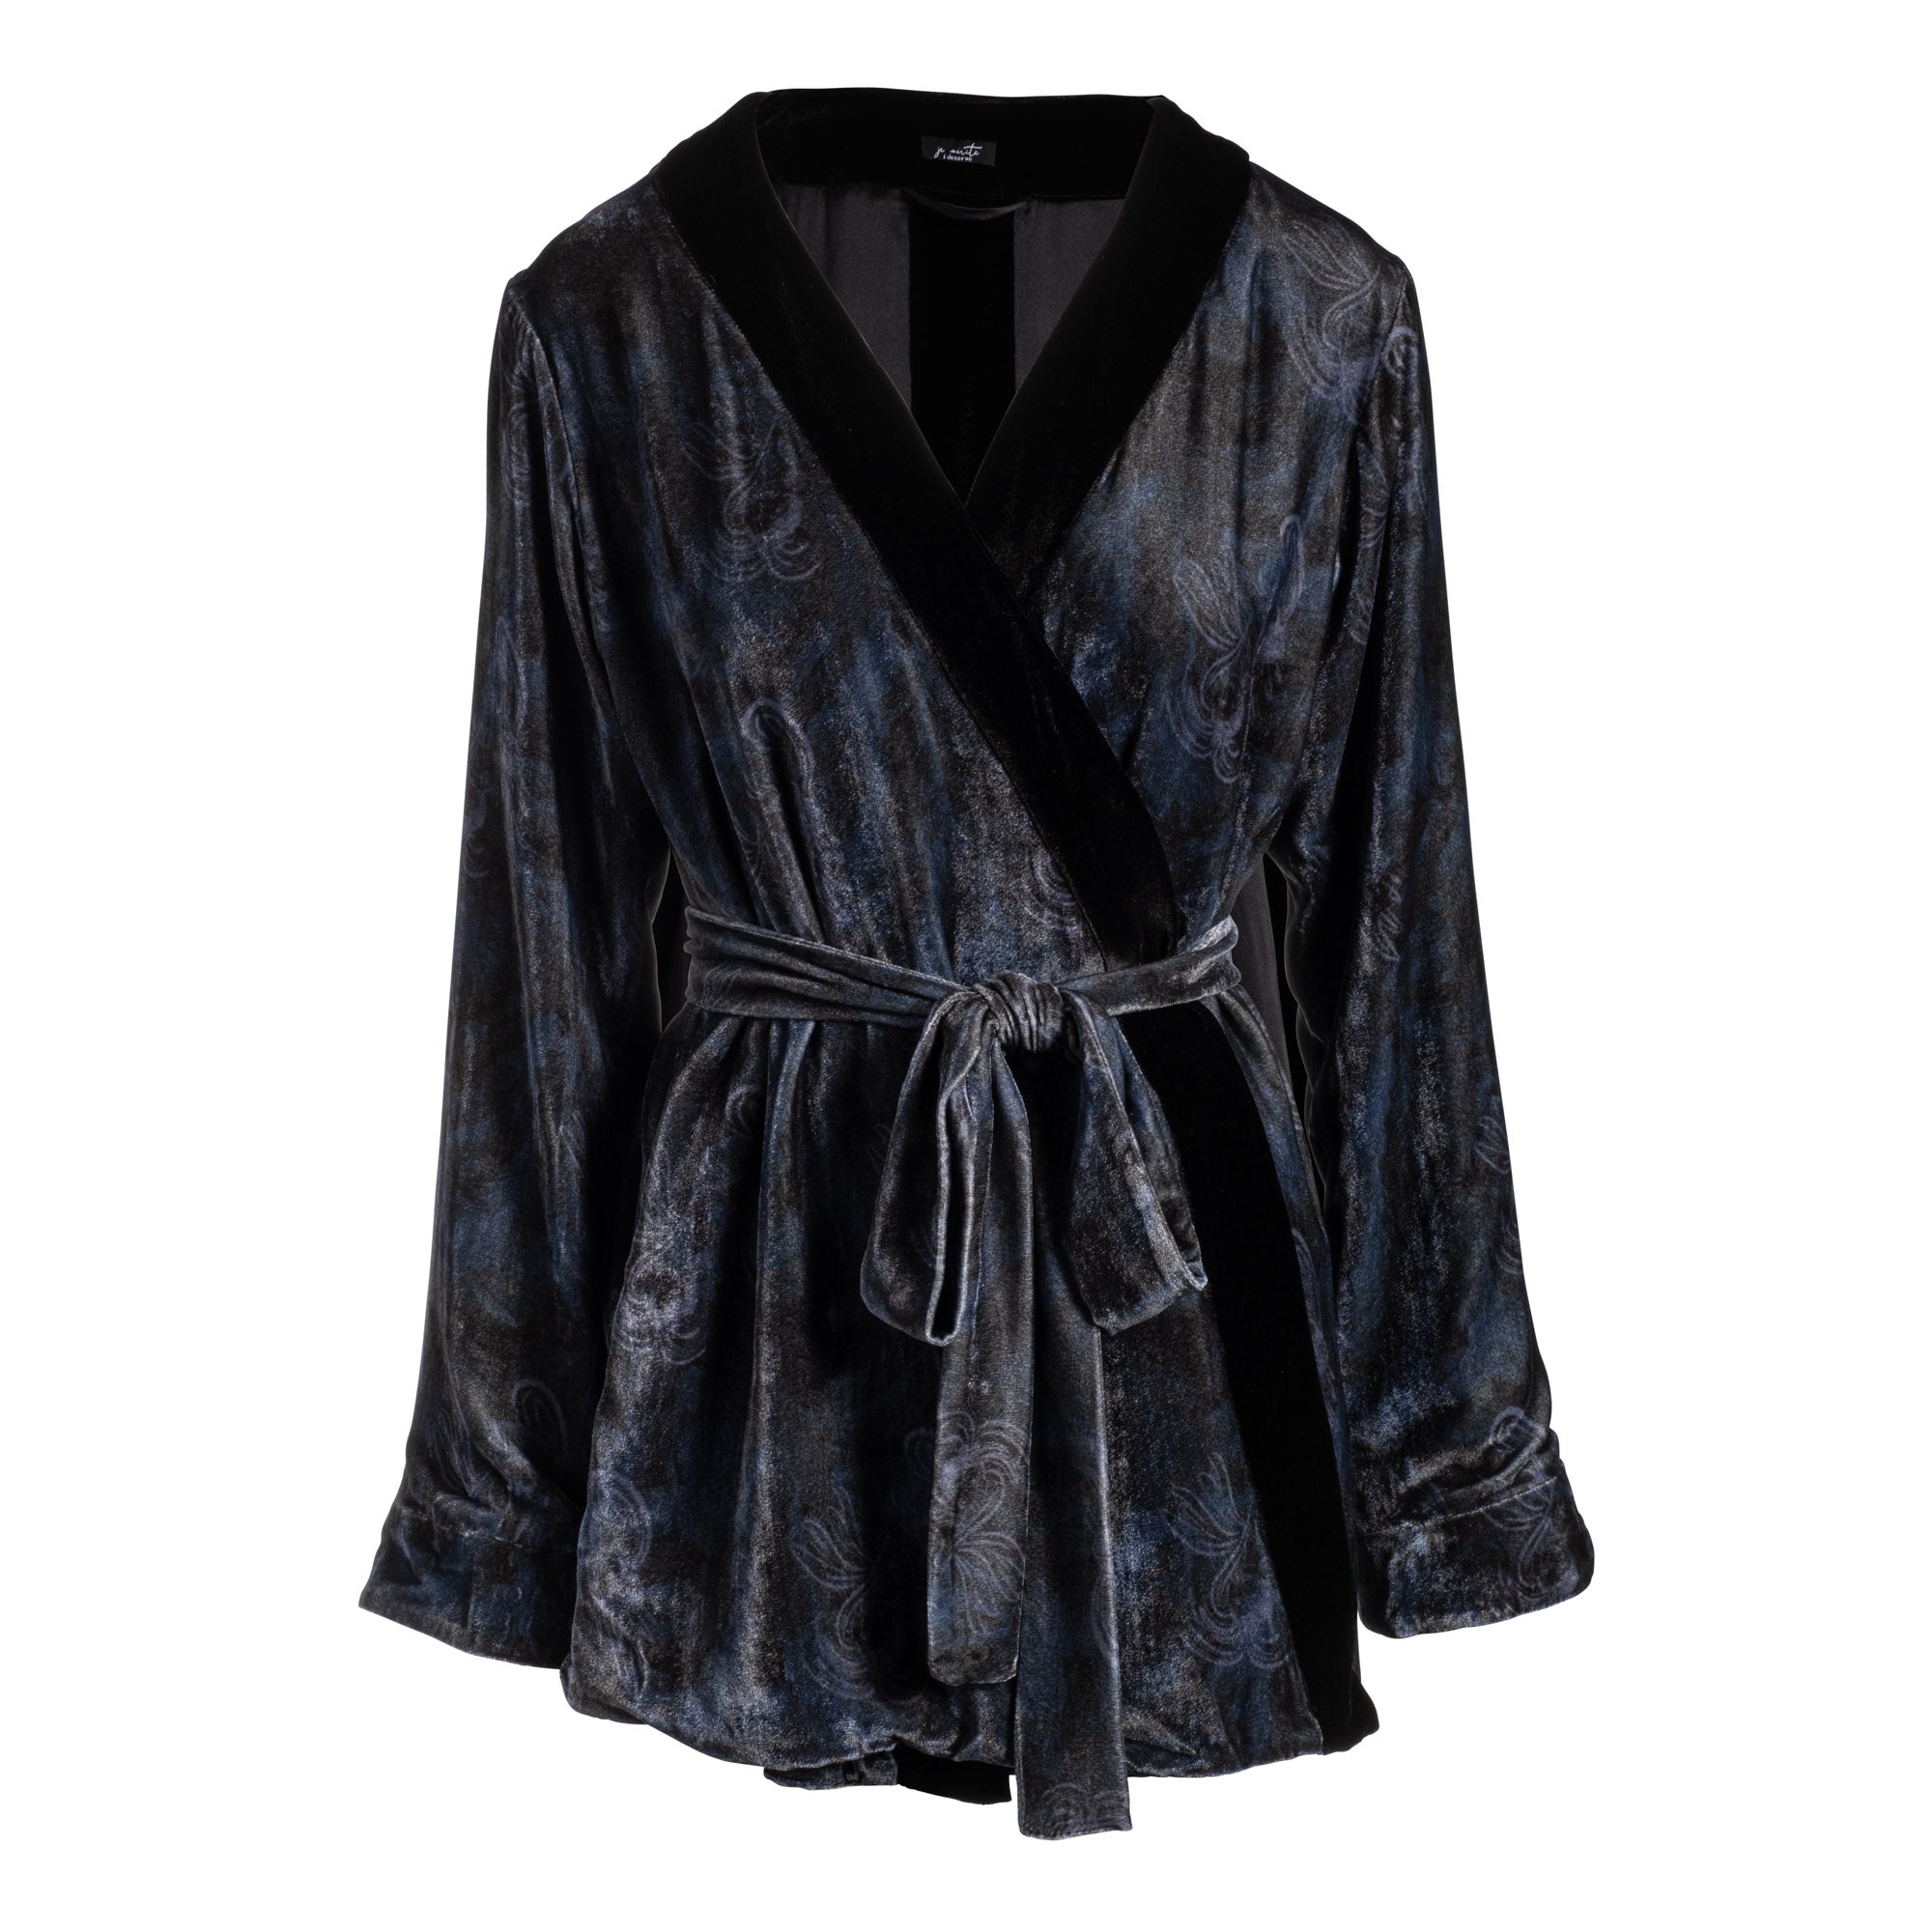 silk velvet short robe in noire – je mérite (i deserve)